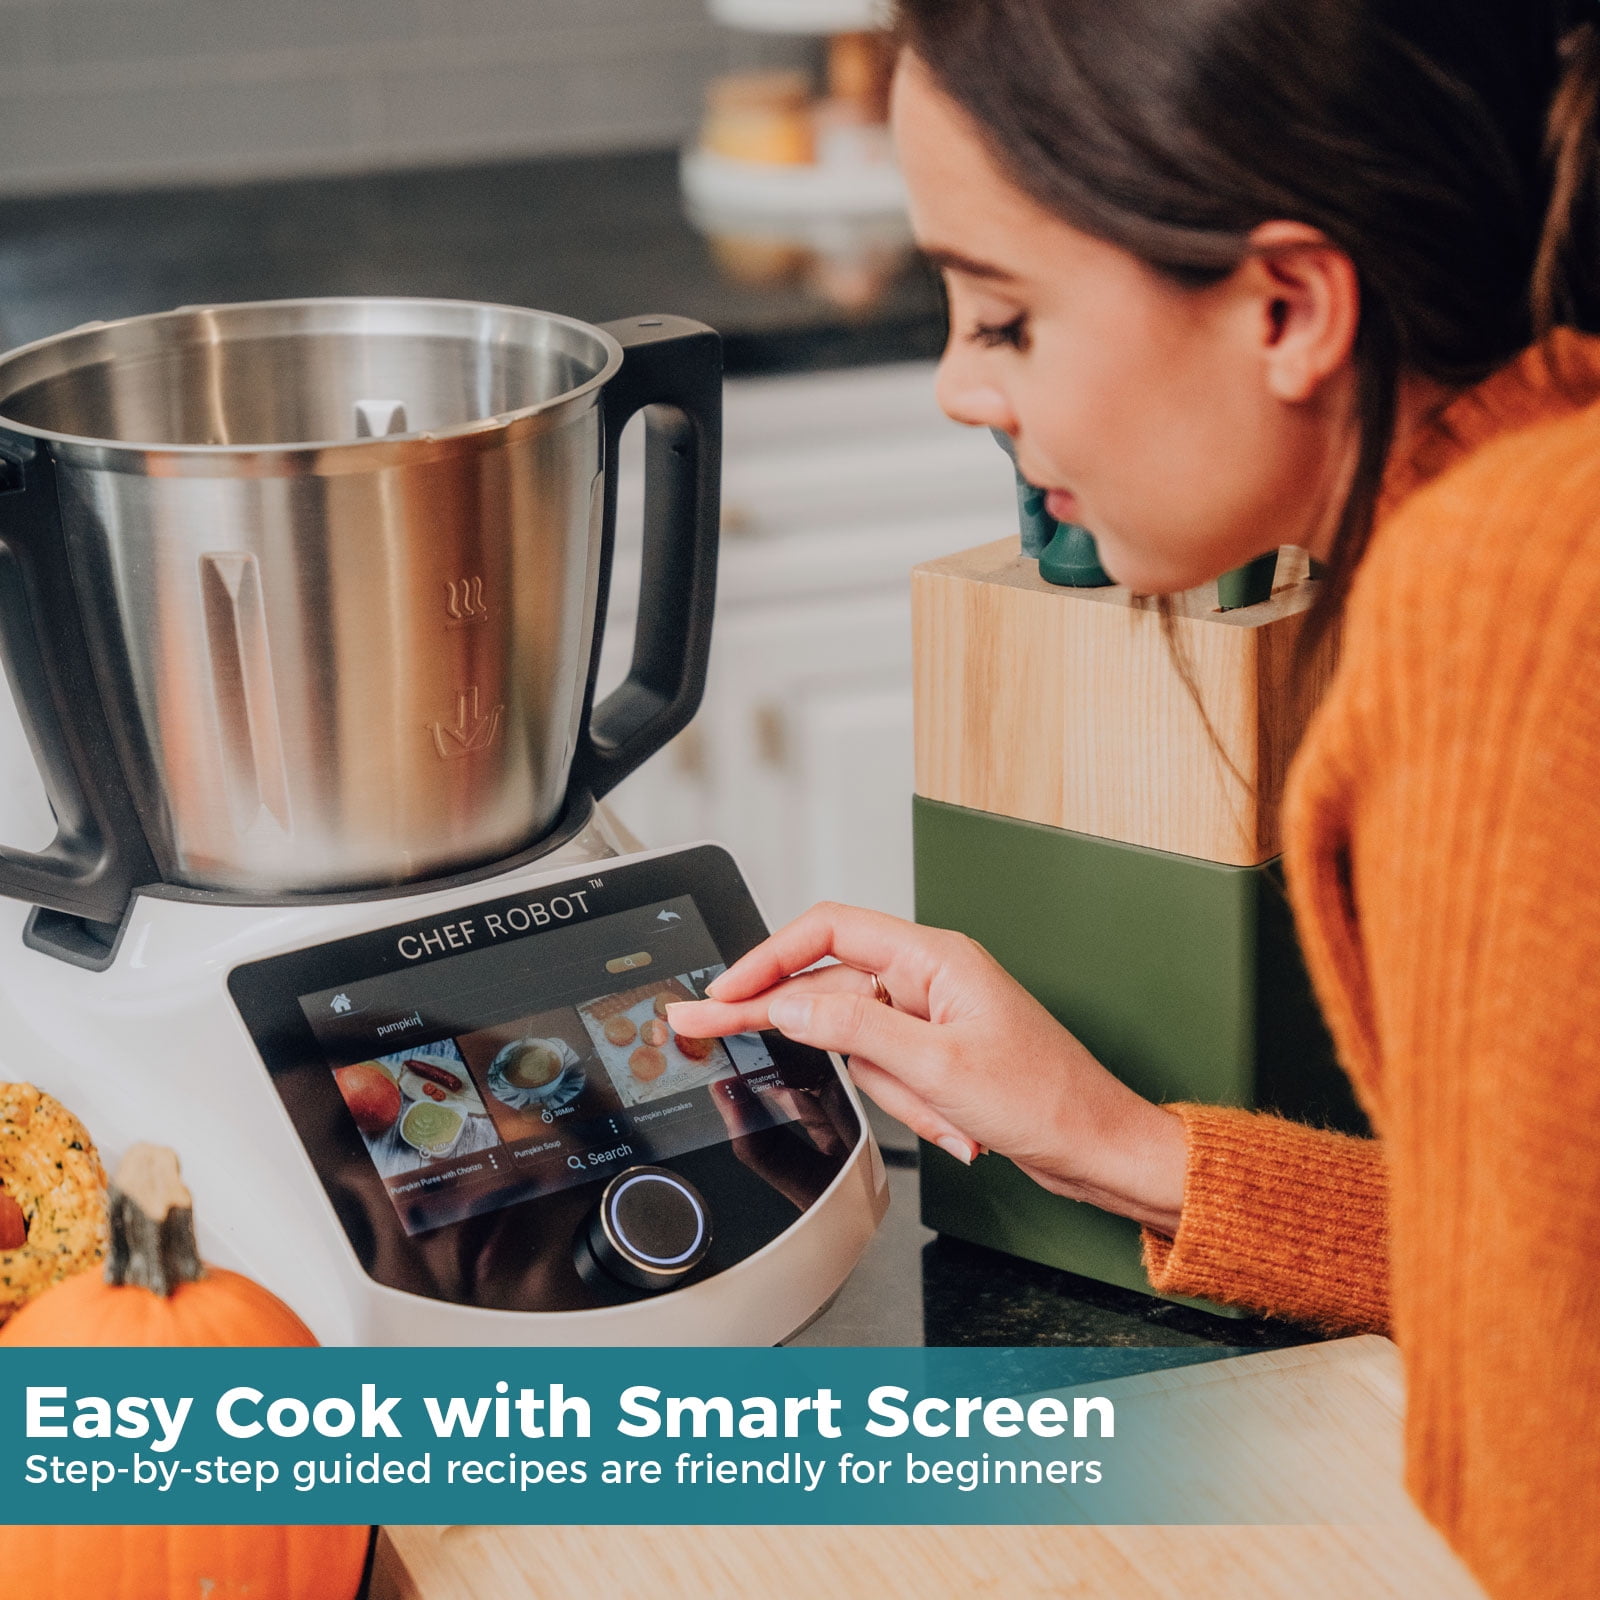 ChefRobot Procesador de alimentos inteligente, multicocina todo en uno y  robot de cocina con recetas guiadas, WiFi integrado autolimpiante, olla de